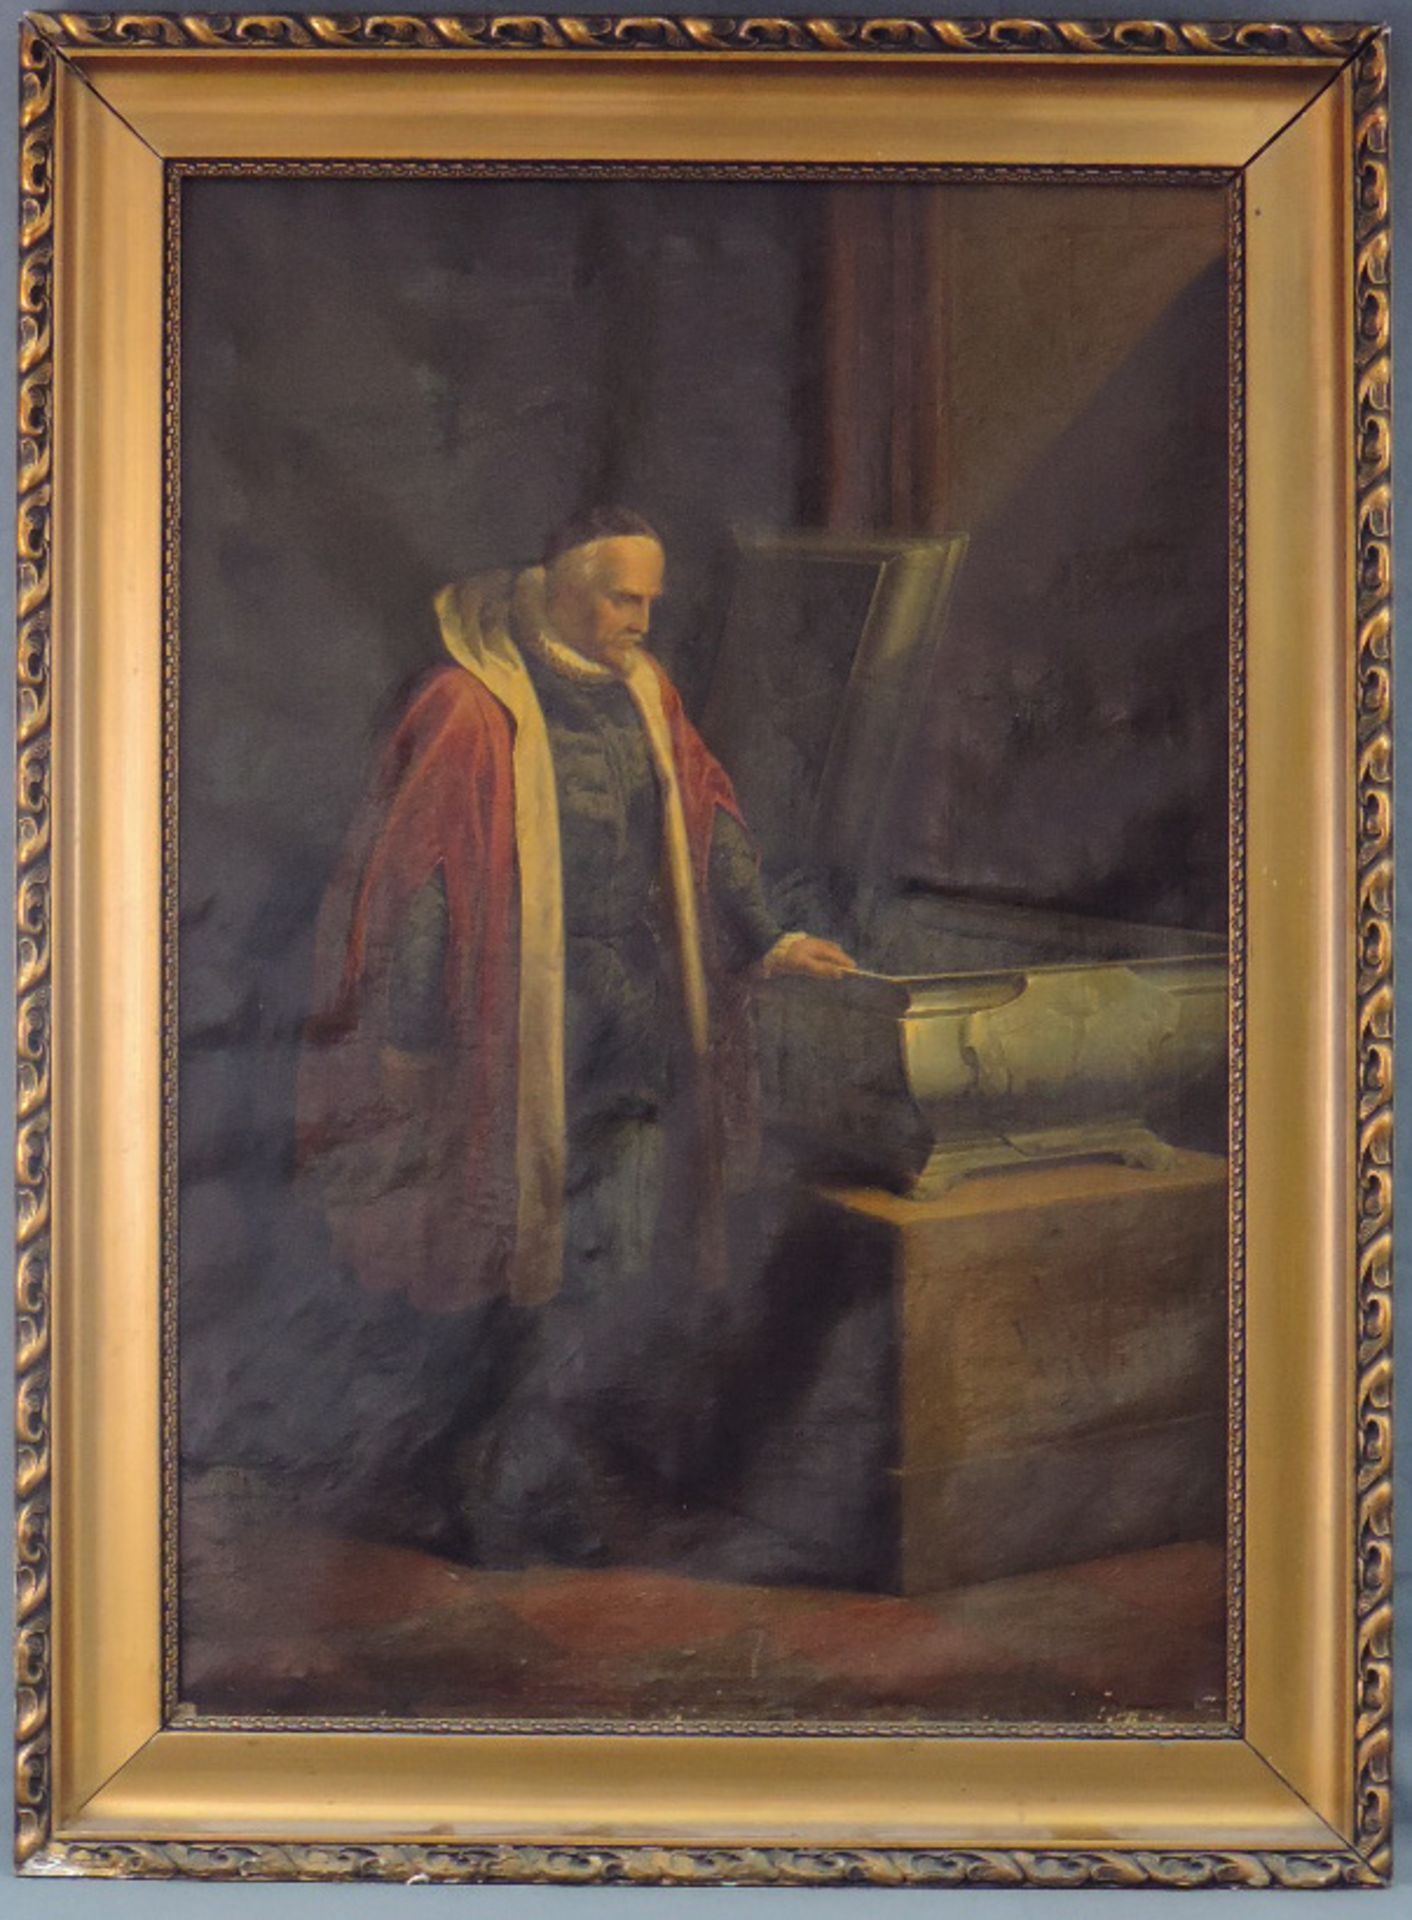 Antonin LHOTA (1812 - 1905). Memento Mori. 1852. Kardinal vor Sarkophag.95 cm x 65 cm. Gemälde, Öl